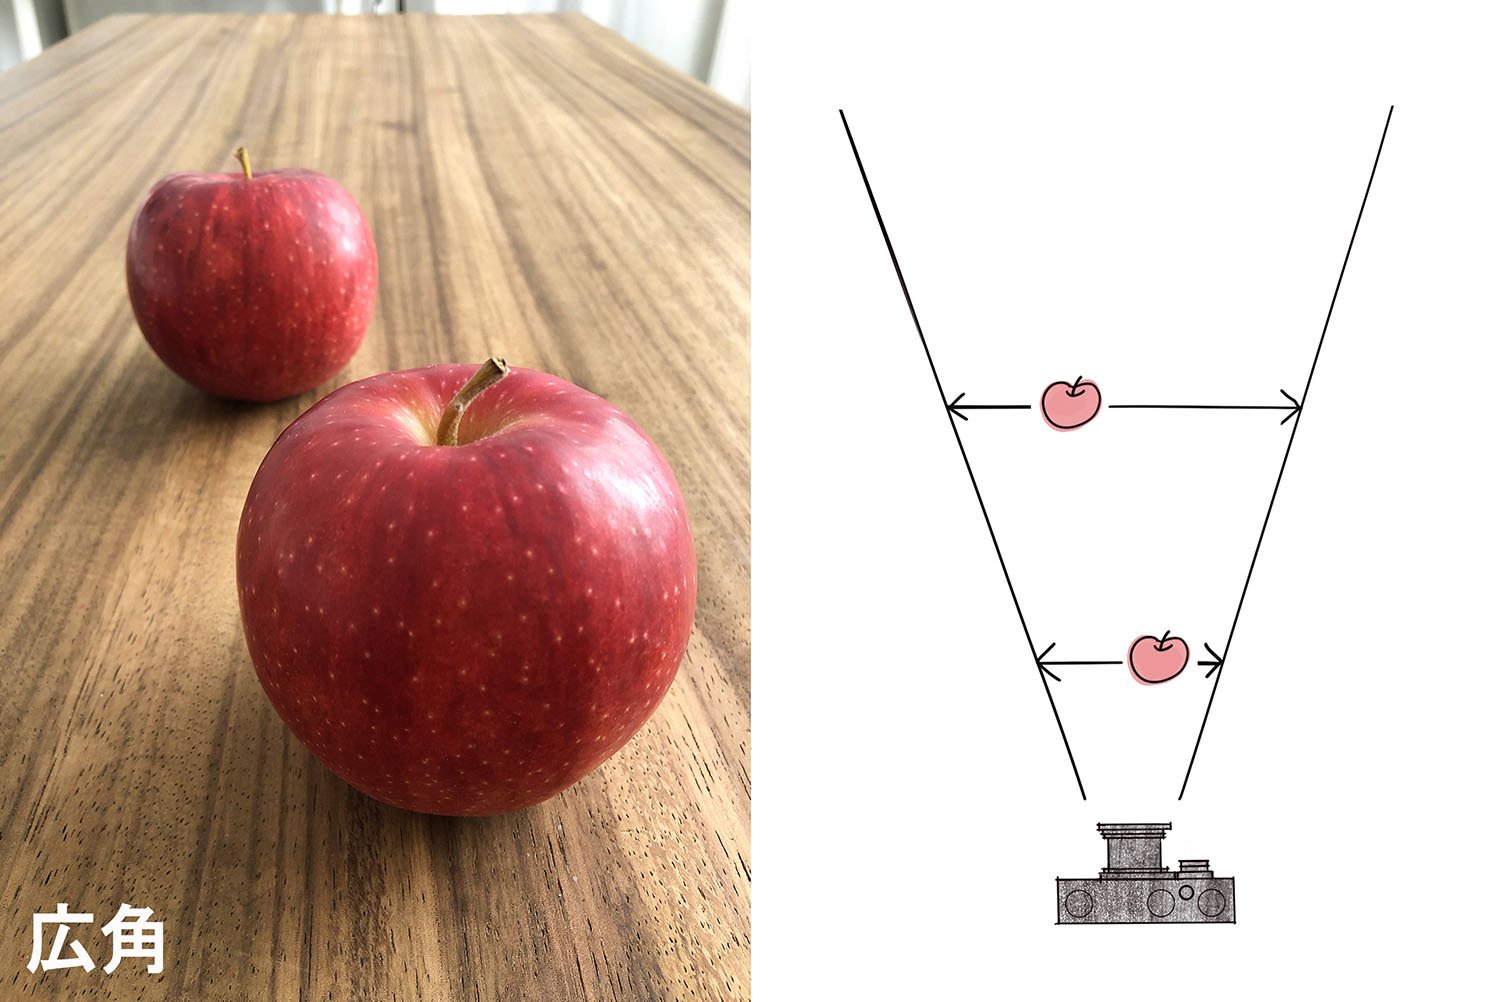 広角で撮った例。遠近感が強調されて奥のリンゴがより小さく見える。